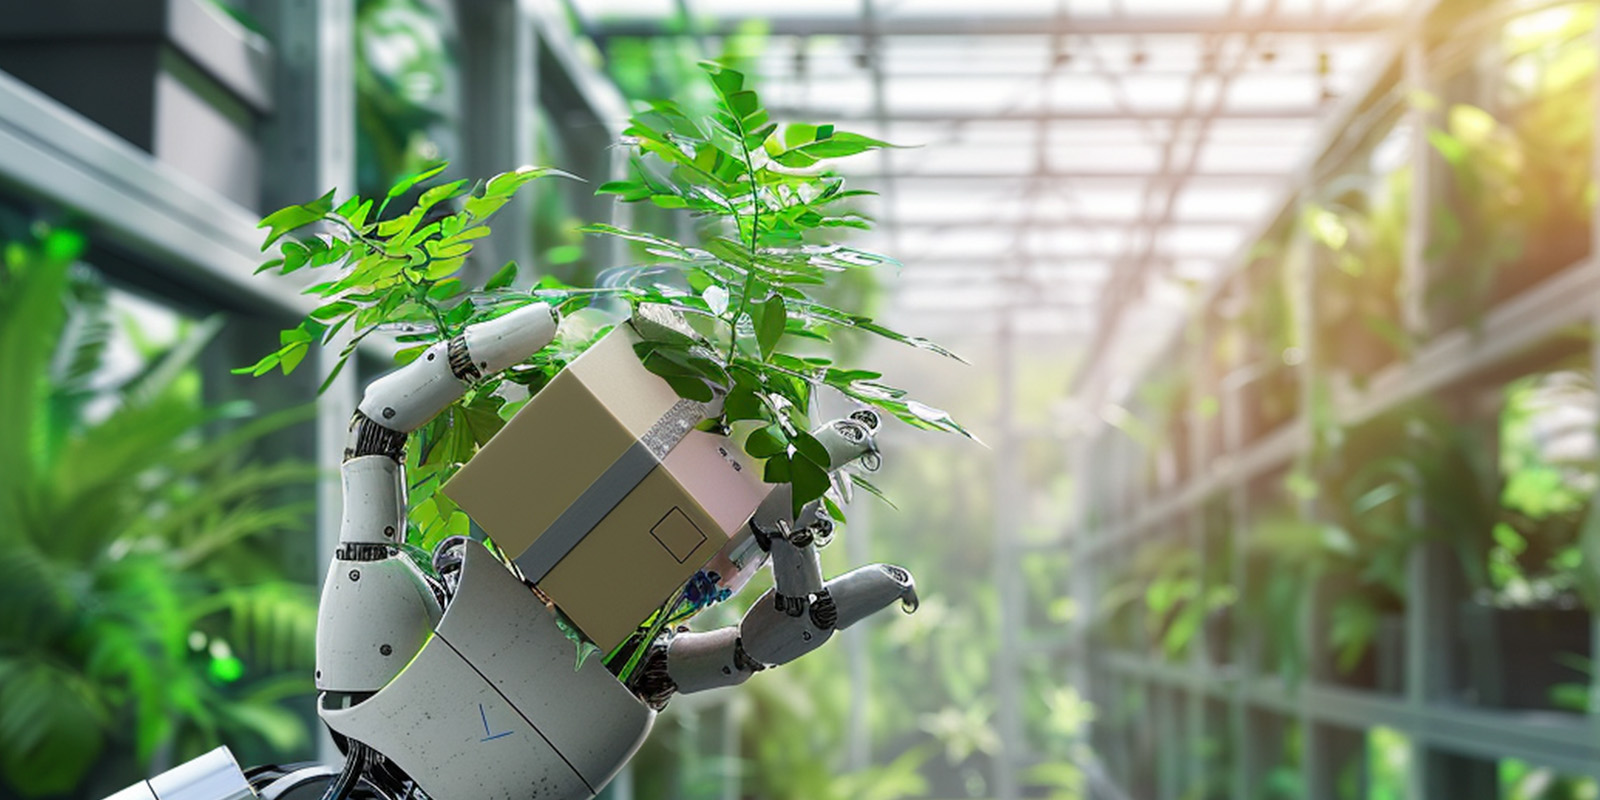 Una mano robótica sosteniendo una caja de cartón ecofriendly rodeada de plantas verdes.
